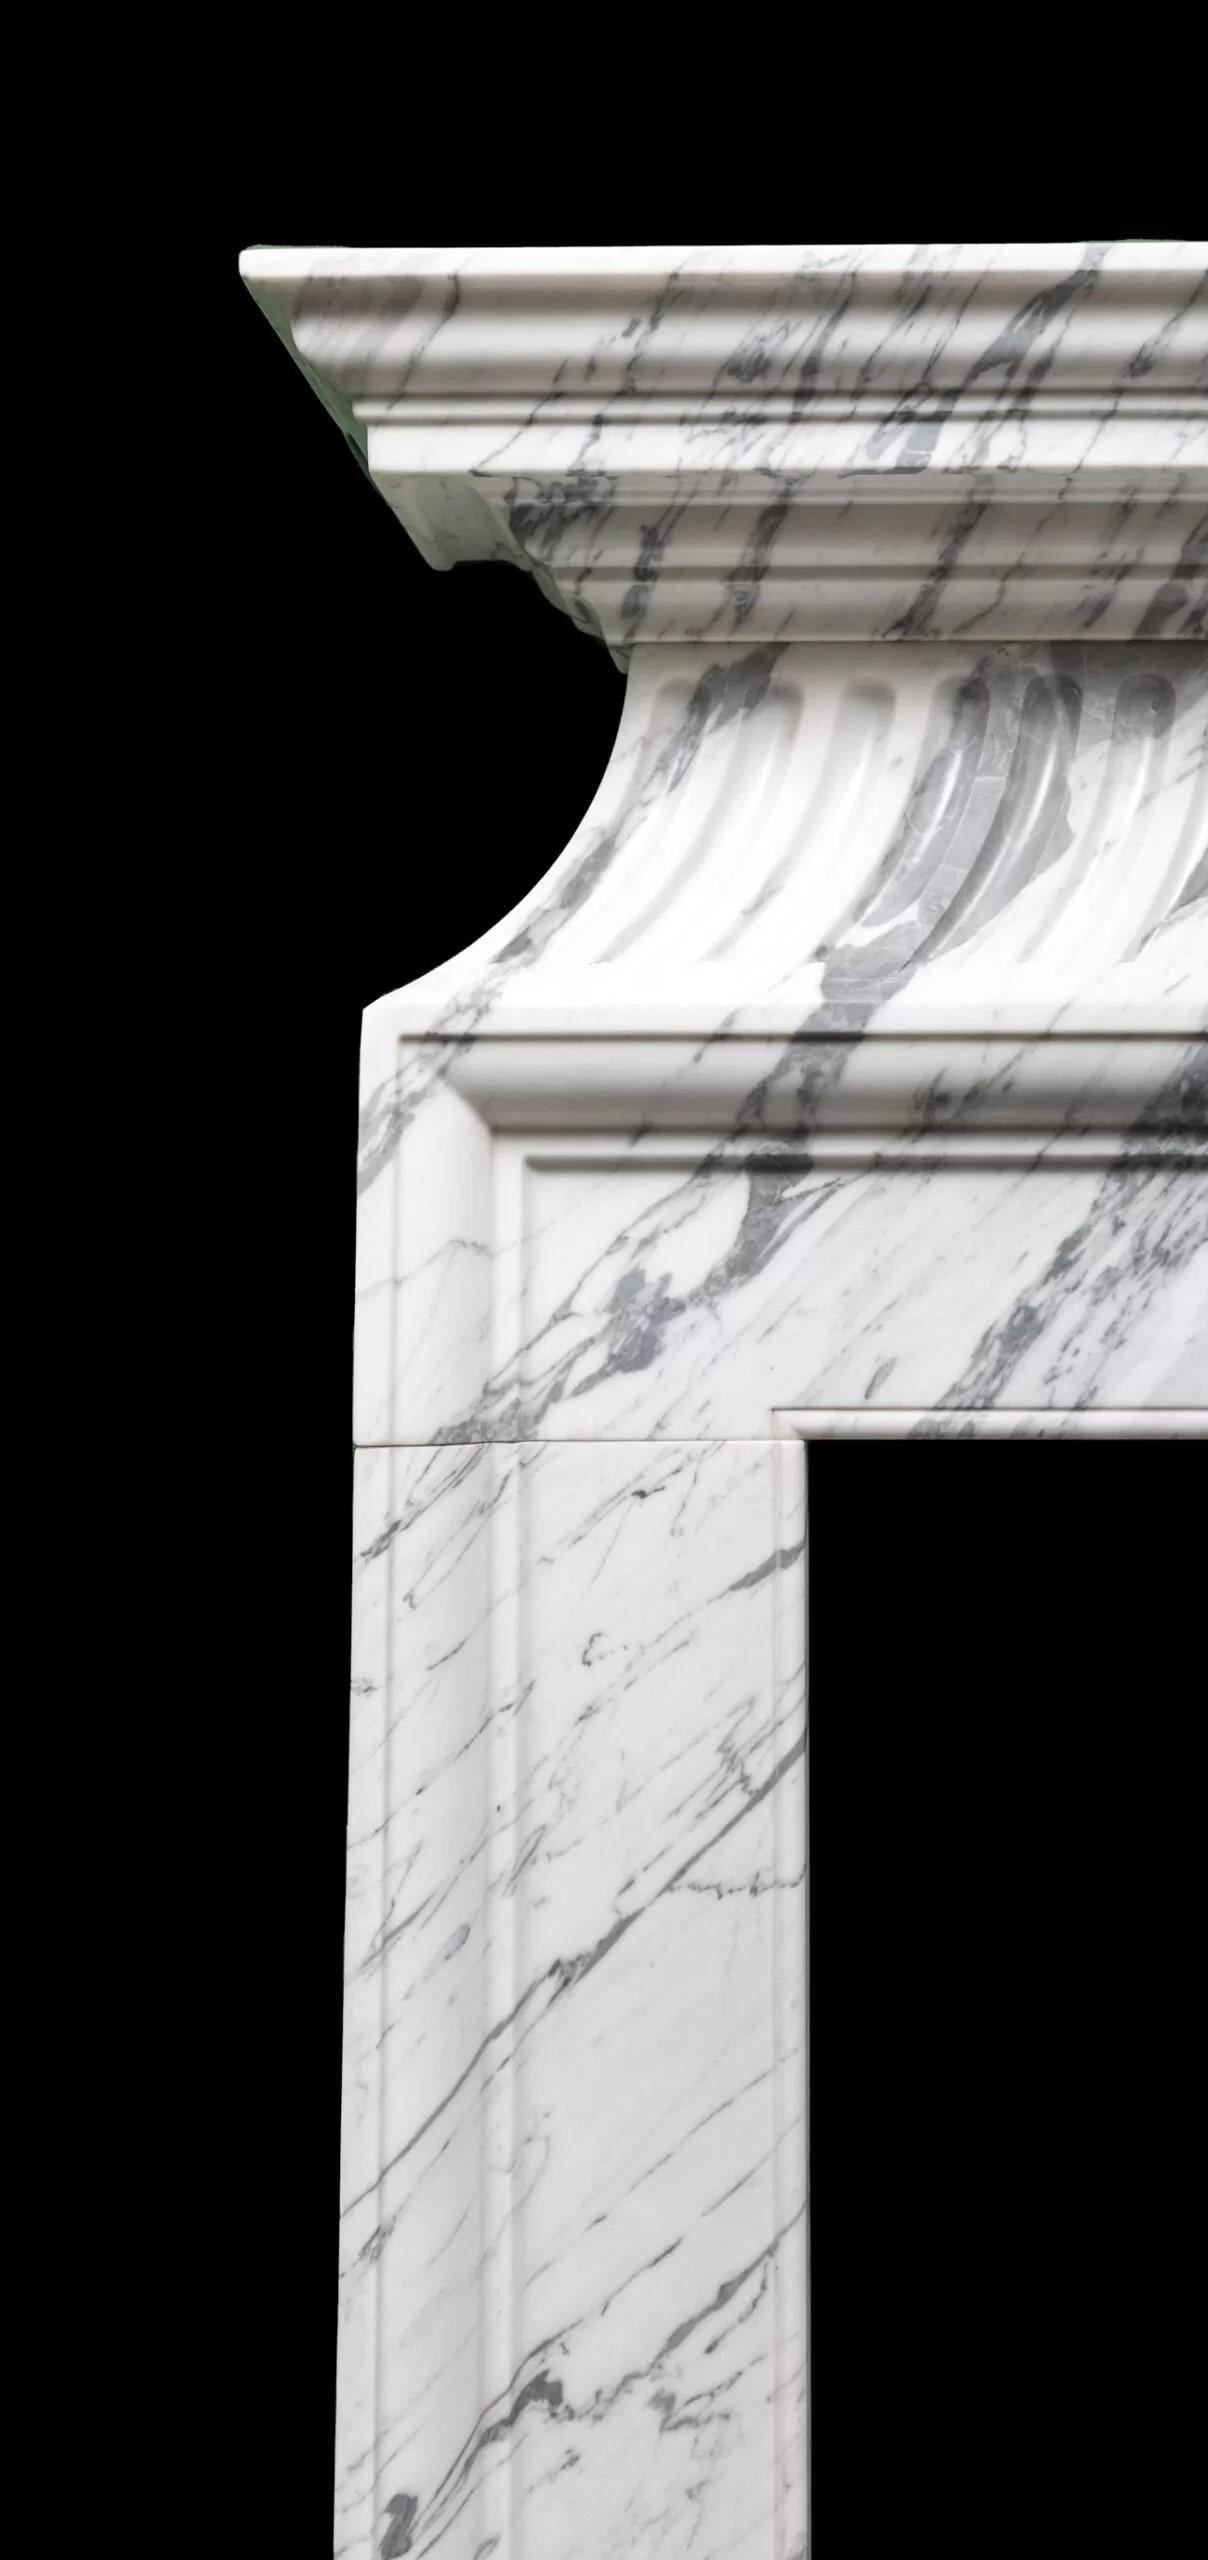 Le Chelsea est une haute et élégante cheminée de style néoclassique en marbre italien de Carrare fabriquée par Ryan and Smith.
Inspiré d'une cheminée originale du XVIIIe siècle, cet encadrement de cheminée de style néoclassique en marbre de Carrare